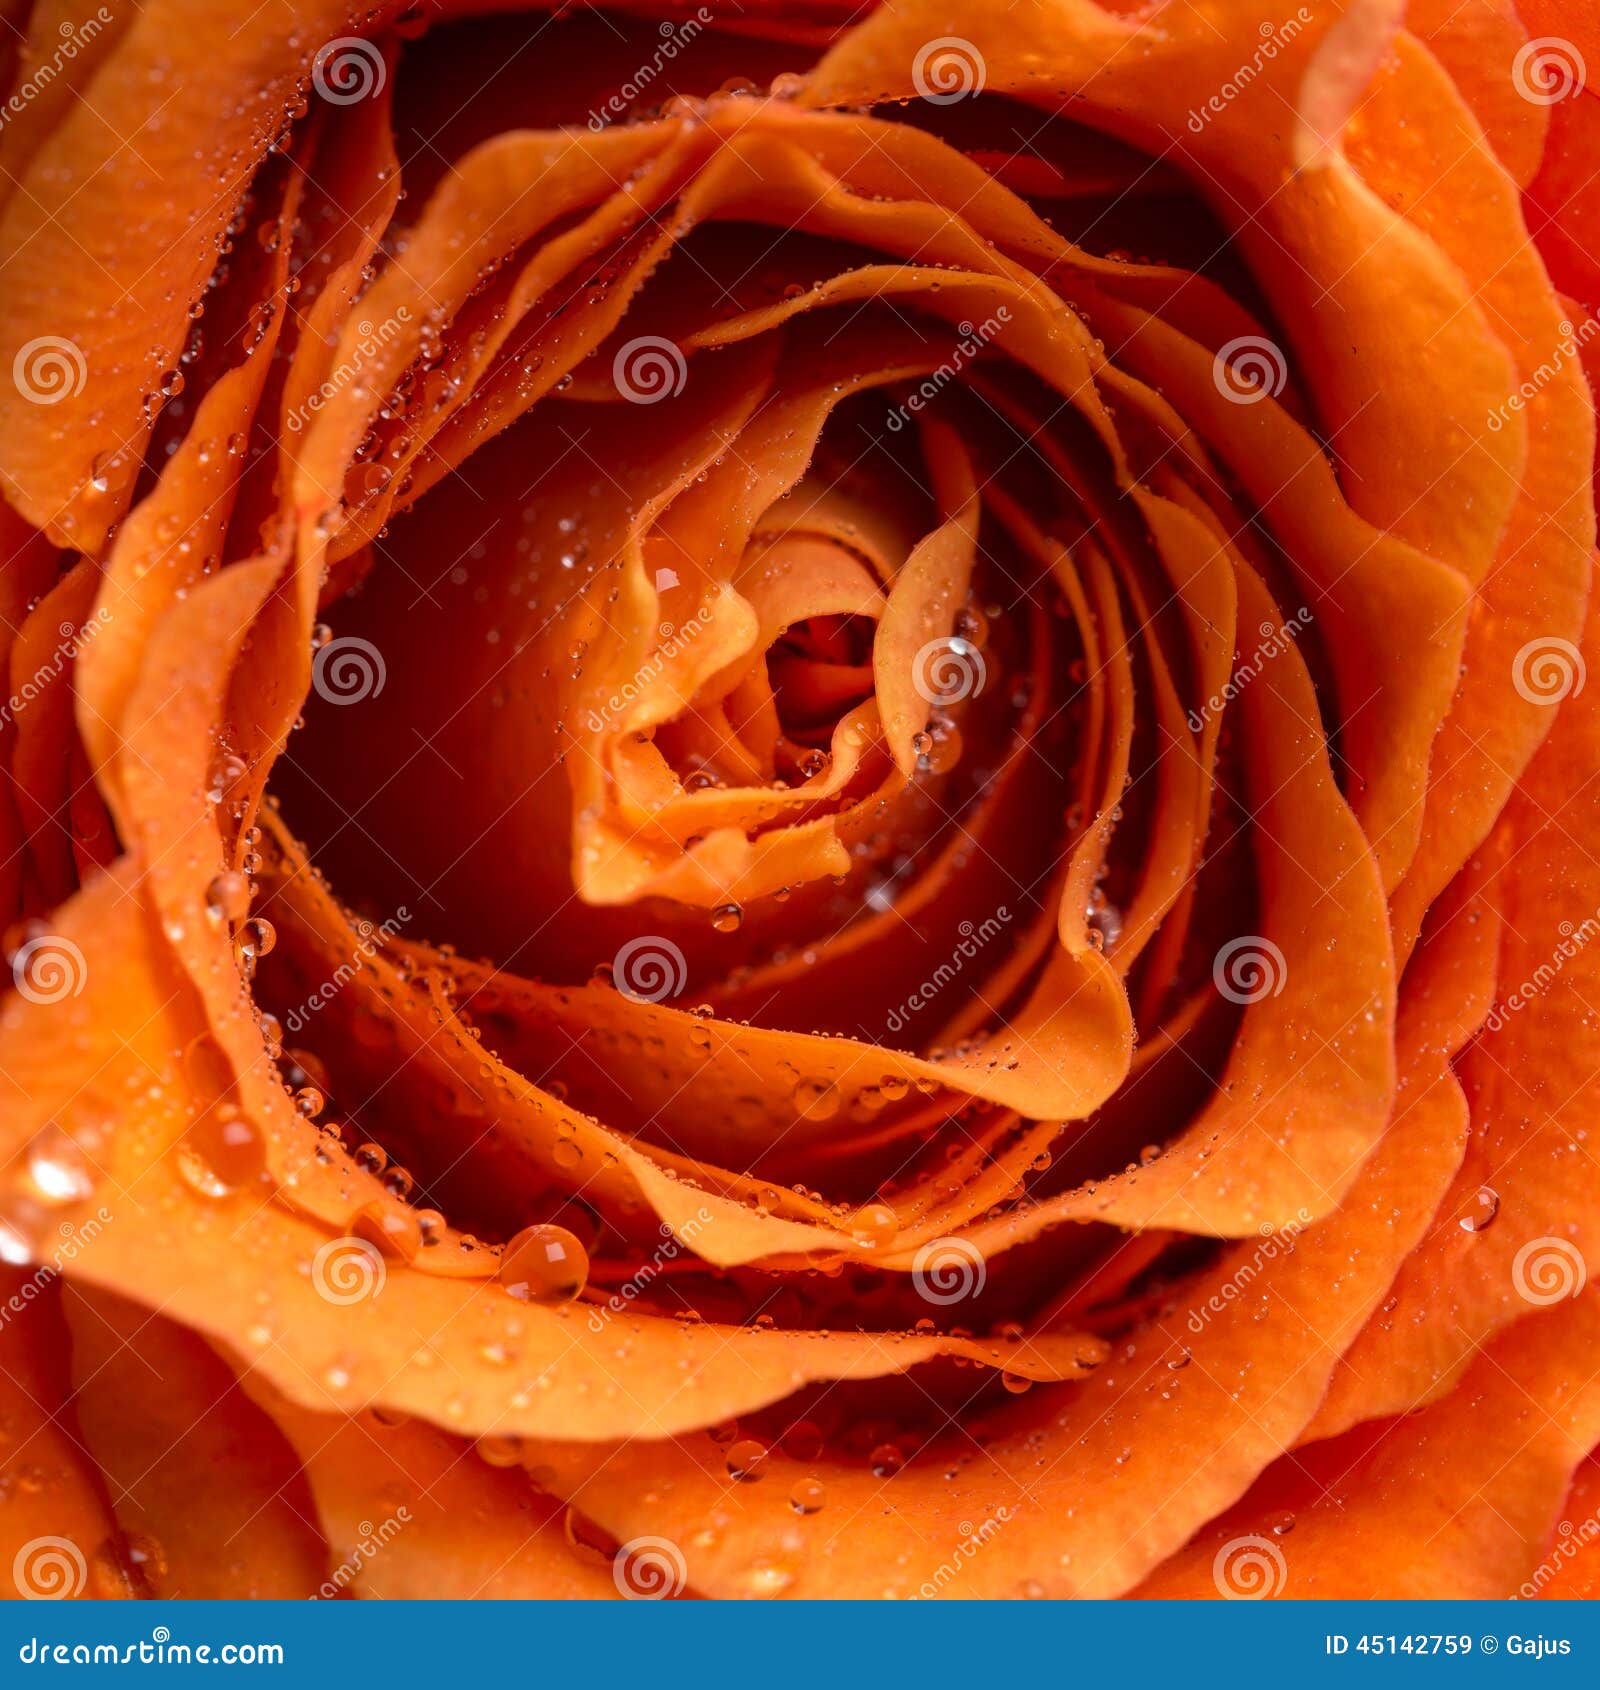 Tautropfen oder Regentropfen auf einer Rose. Schließen Sie herauf obenliegende Ansicht von funkelnden Tautropfen oder von Regentropfen auf den Blumenblättern einer orange Rose in einer Liebe, in einem Romance, in Valentinsgrüßen oder in einem Jahrestagskonzept